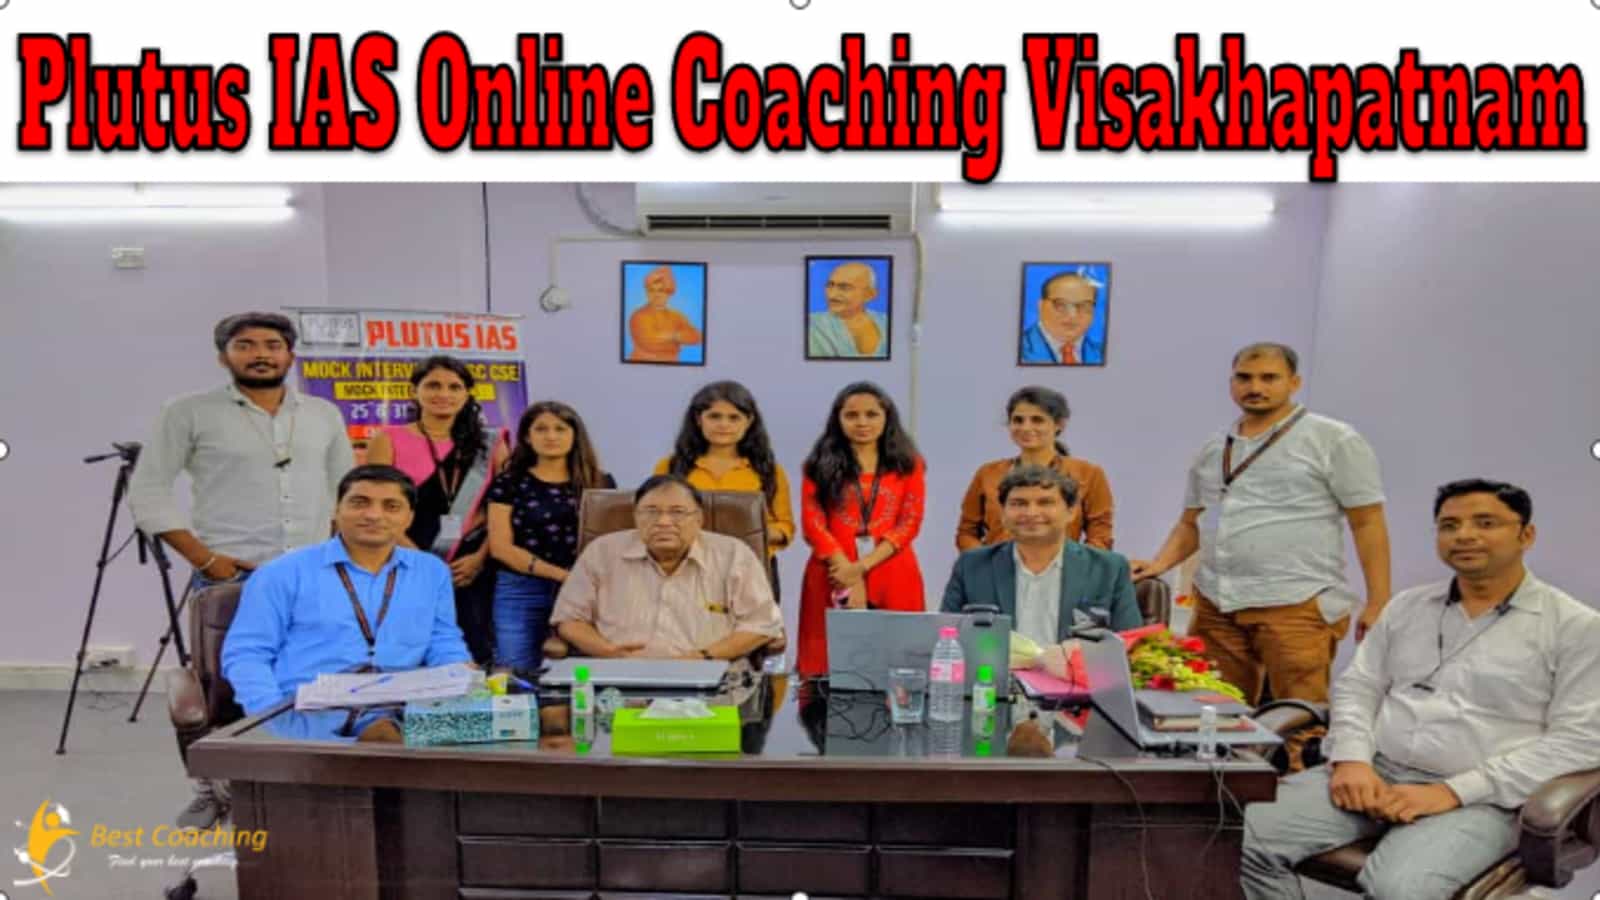 Plutus IAS Online Coaching Visakhapatnam